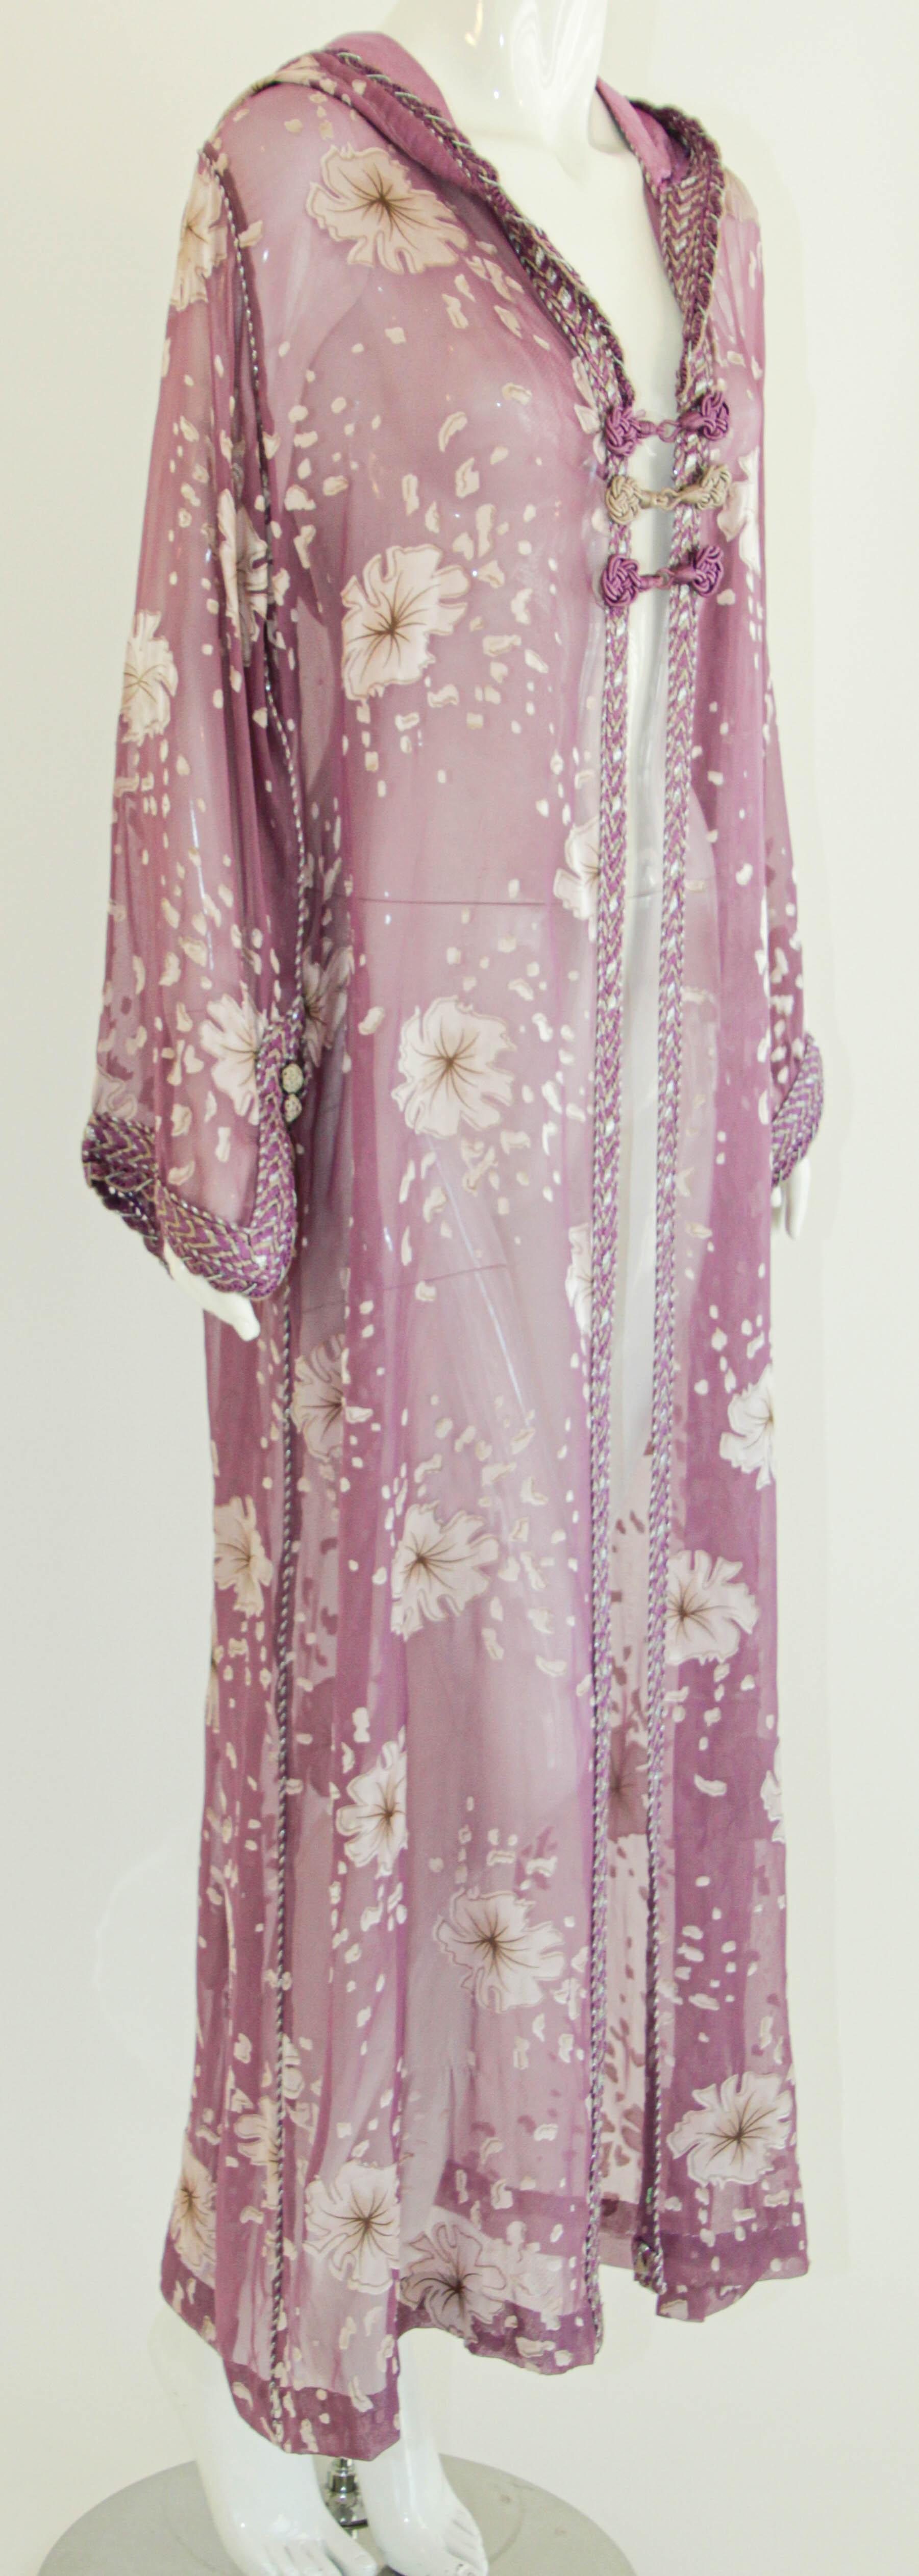 Moroccan Lavender Kaftan Maxi Dress Hooded Vintage Caftan For Sale 3